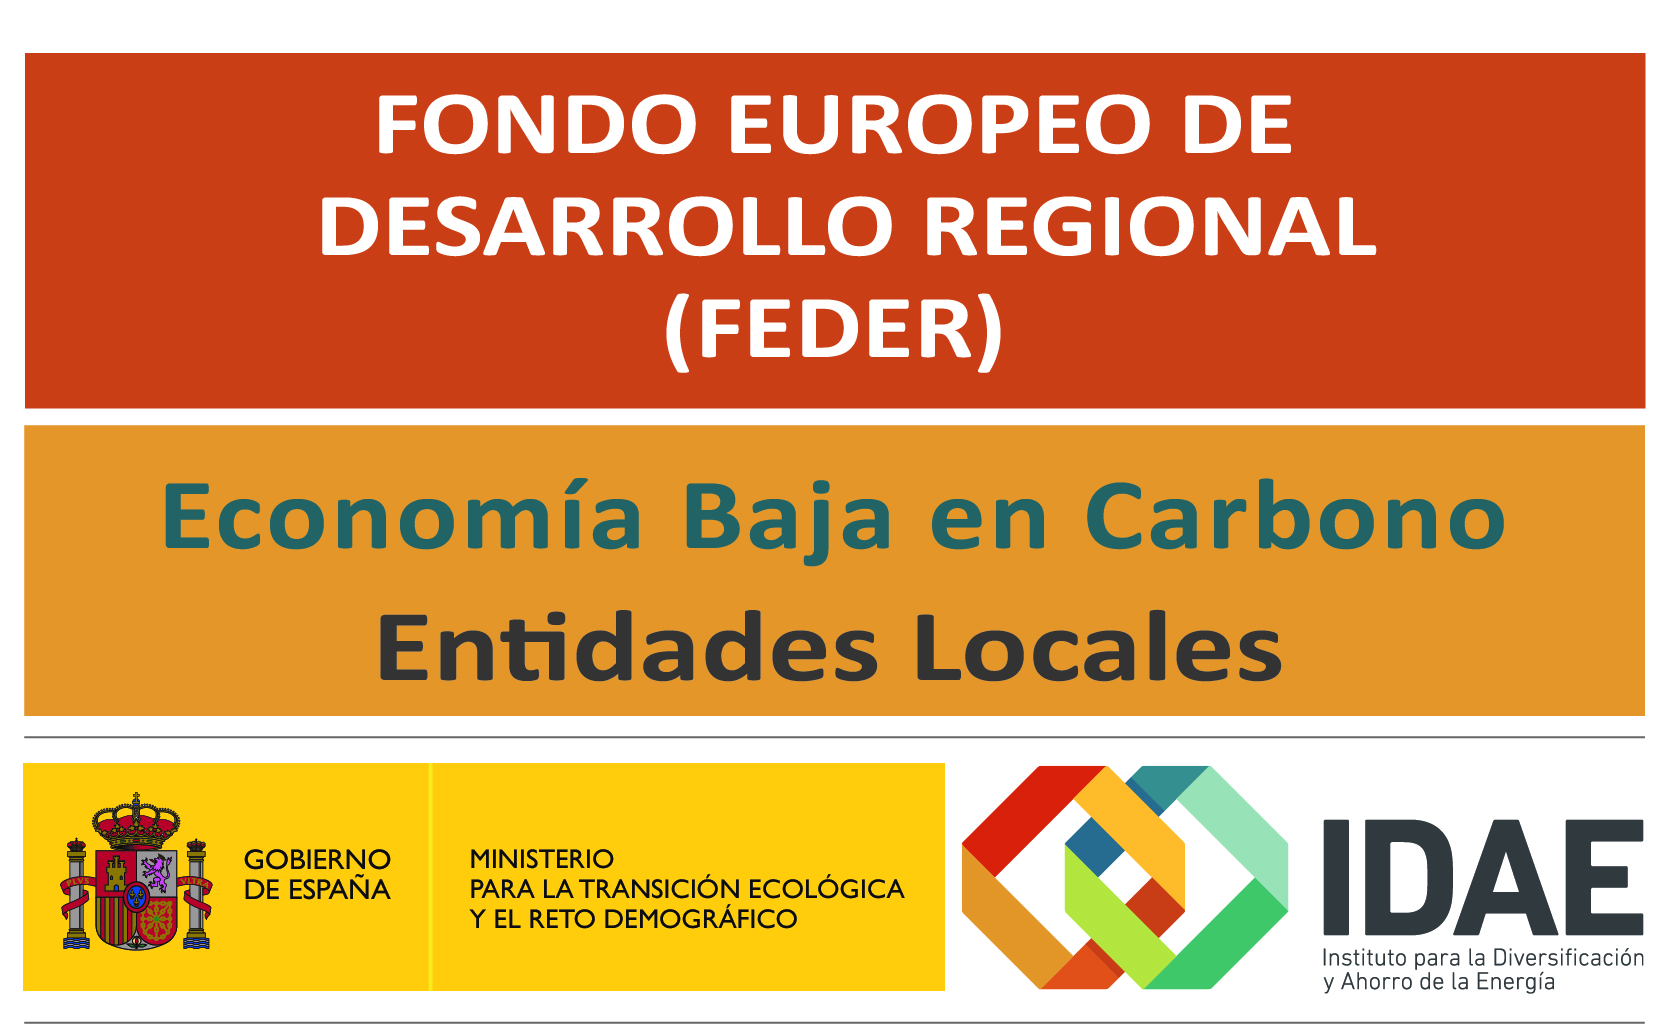 Fondo Europeo de Desarrollo Regional (FEDER). Economía Baja en Carbono Entidades Locales